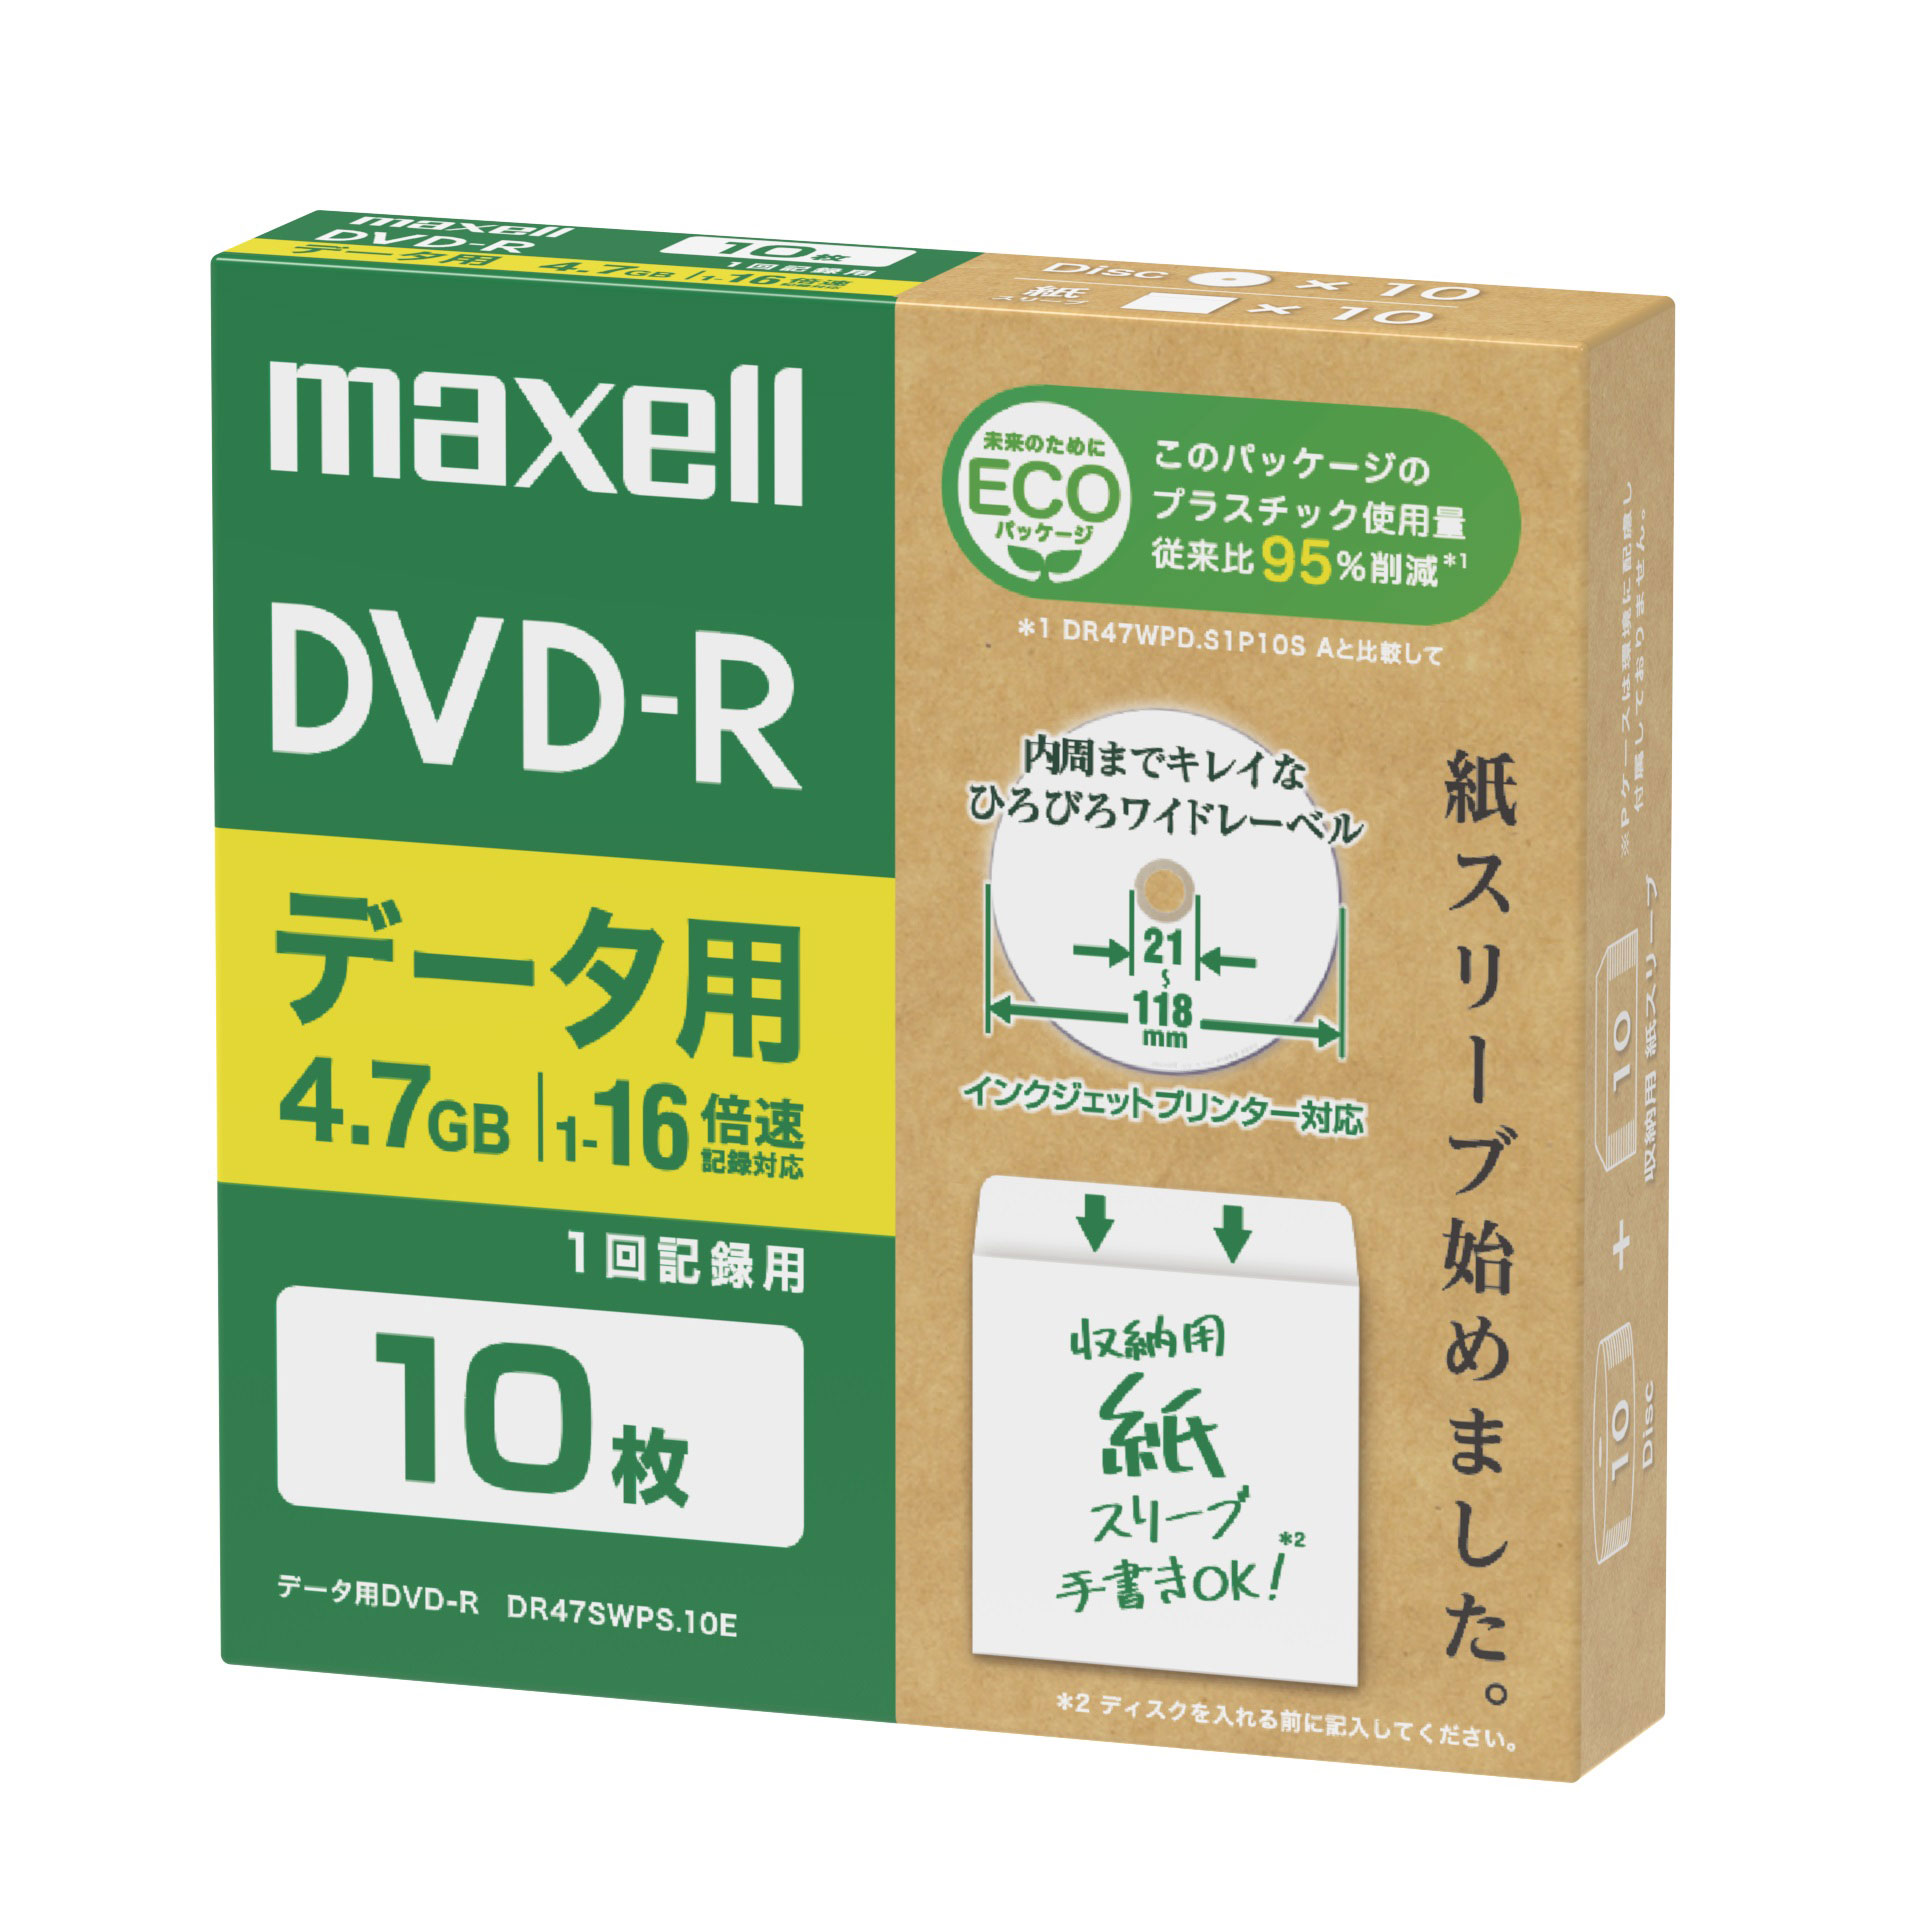 マクセル DR47SWPS.10E データ用 1〜16倍速対応DVD-R 10枚パック 片面4.7GB ホワイトプリンタブル[DR47SWPS10E] 返品種別A